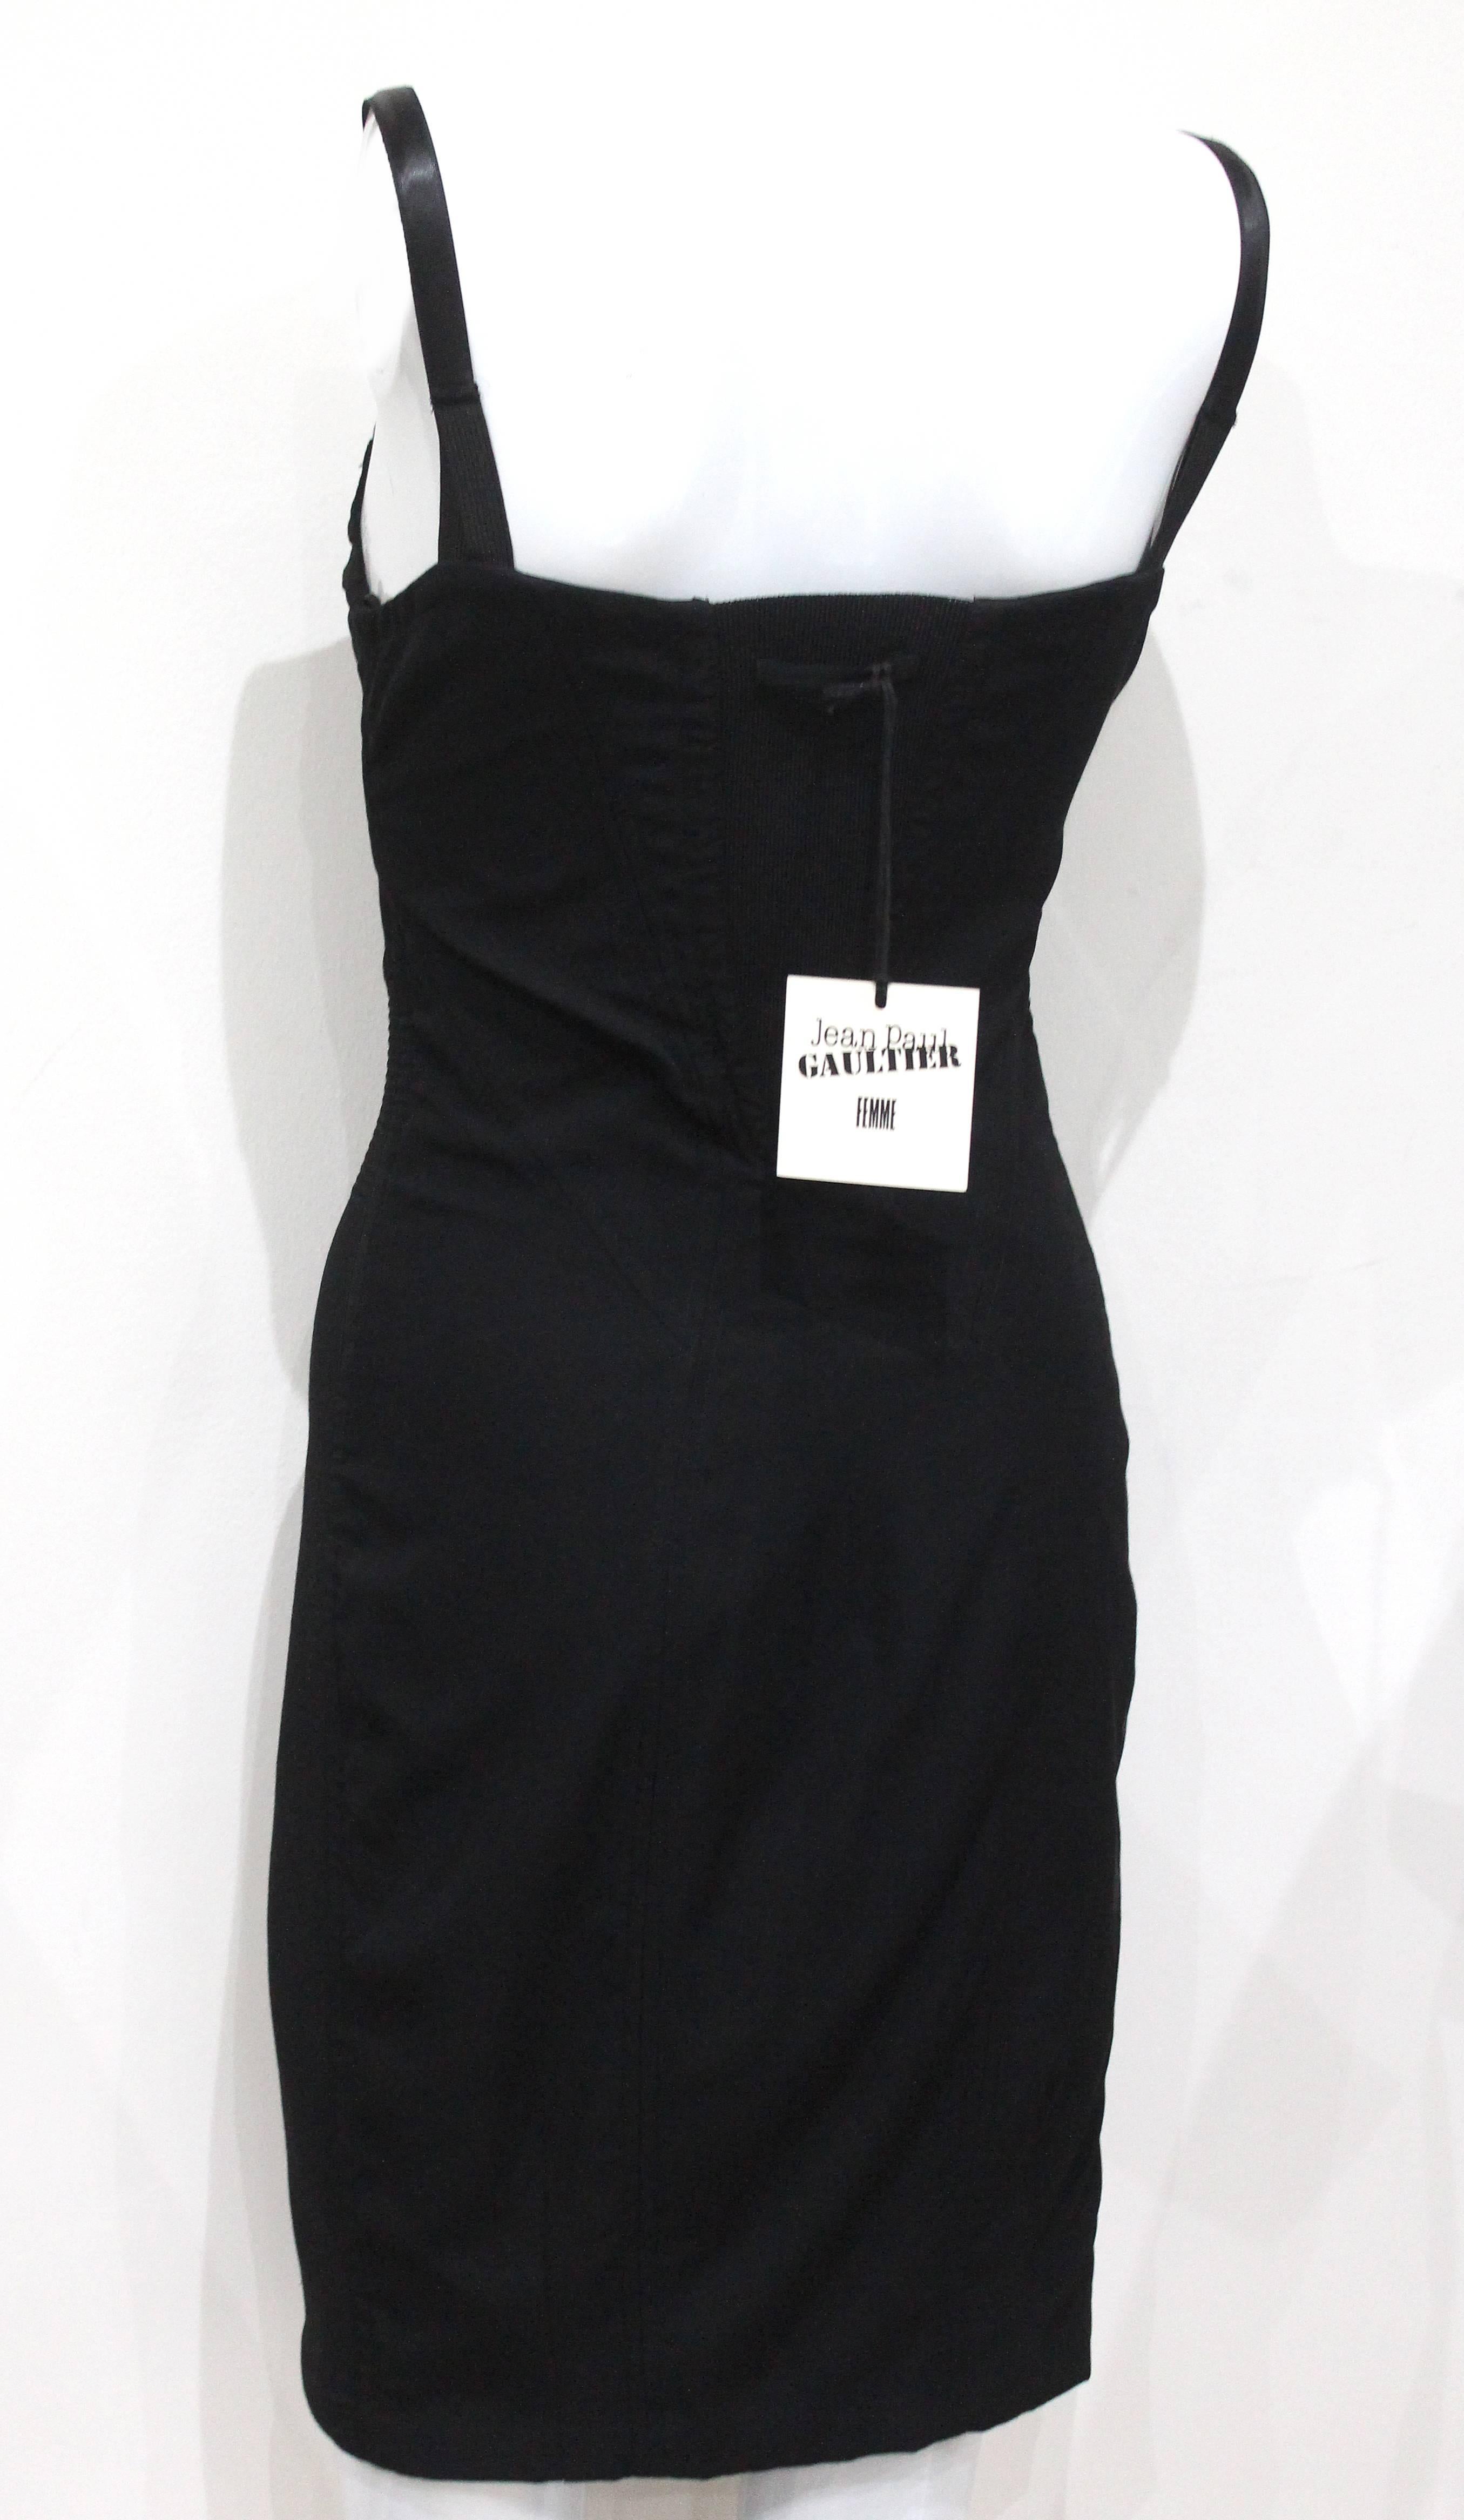 Women's 1990s Important Jean Paul Gaultier lingerie style corset bra dress 